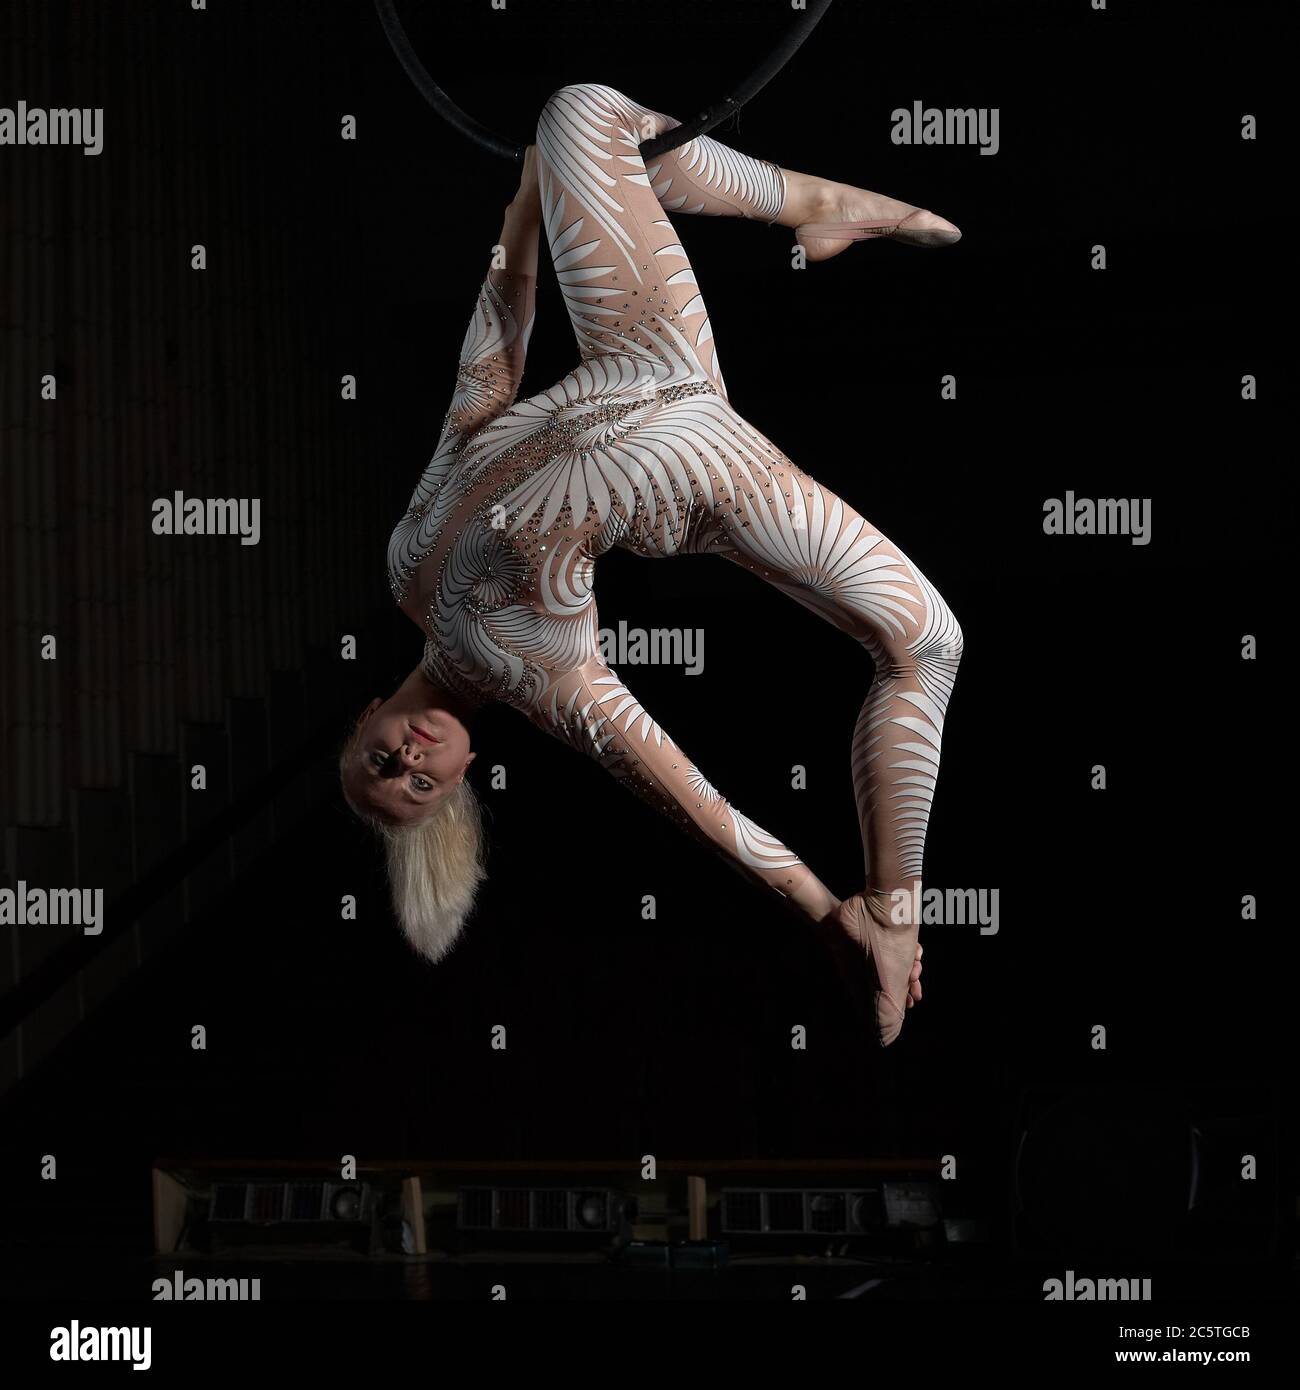 Der akrobat führt einen Stunt am Luftring durch. Mädchen in einem Anzug für Aufführungen. Stockfoto